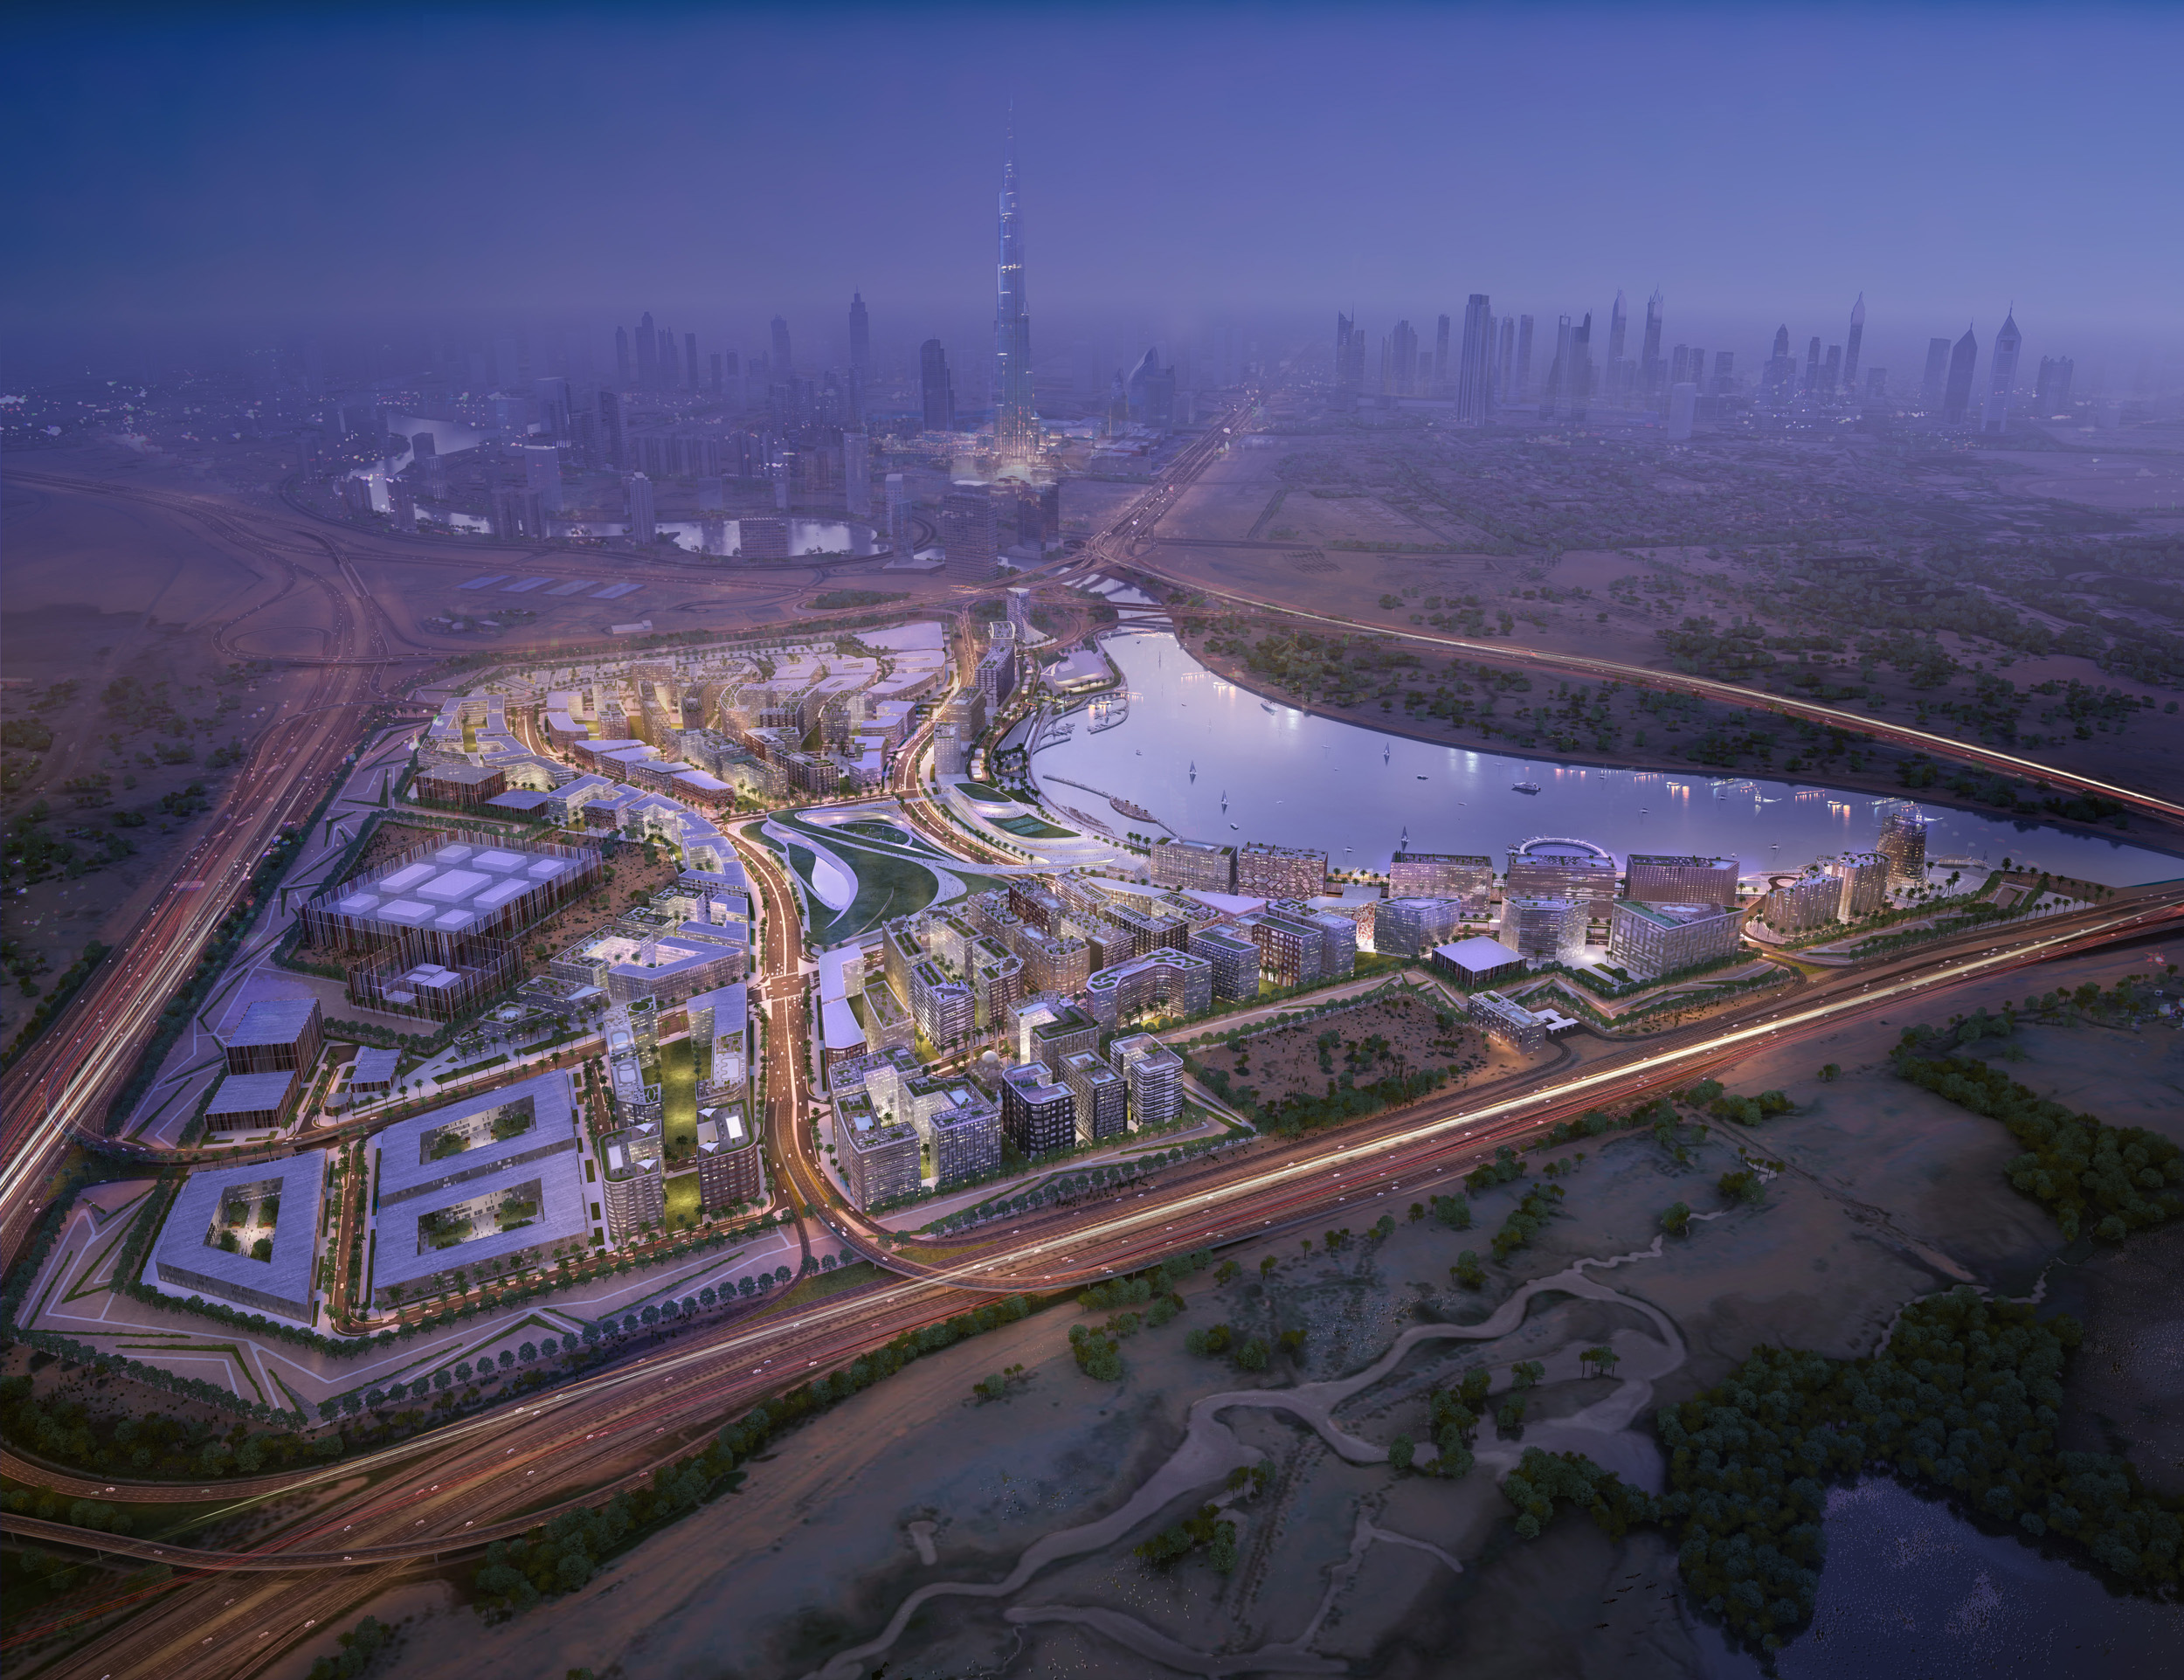 حي دبي للتصميم يستضيف فعاليات ملتقى d3 أبريل القادم